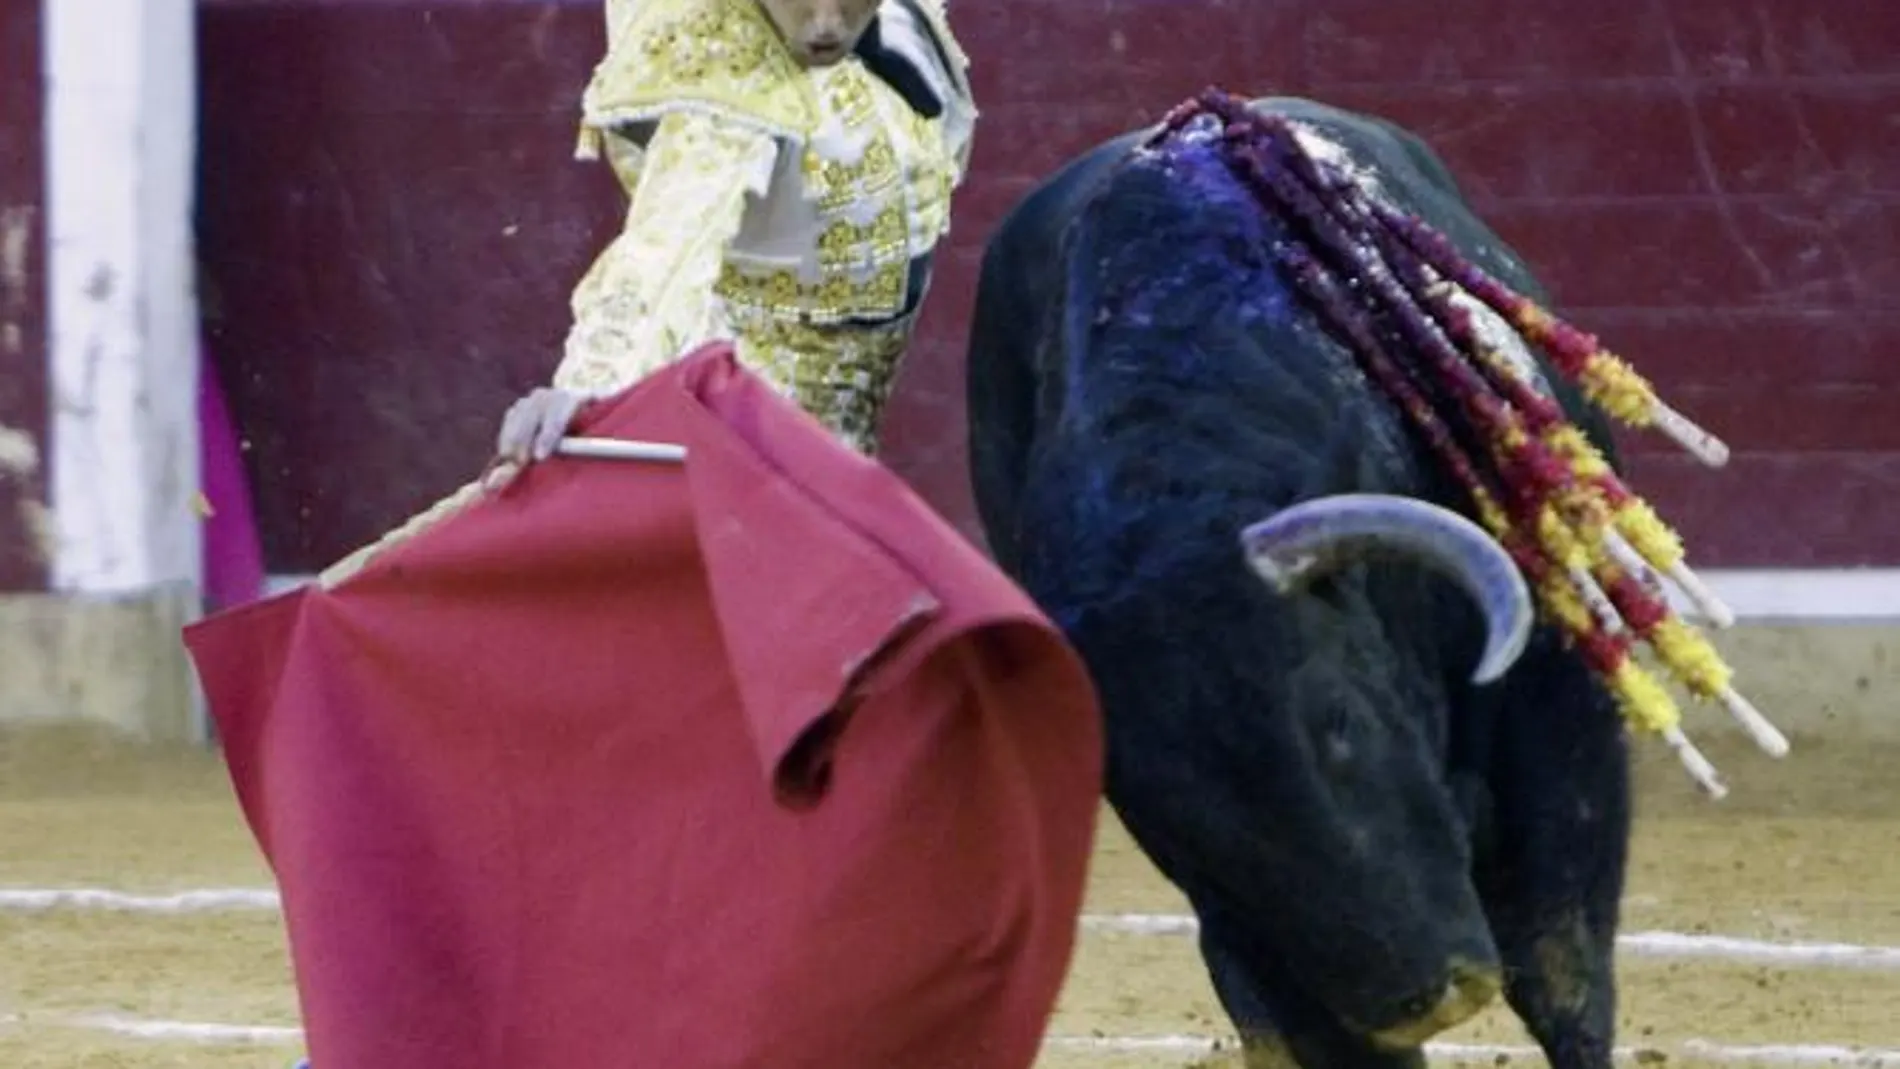 El salmantino Javier Castaño culmina un derechazo a su segundo toro de Cuadri en la penúltima de la Feria del Pilar de Zaragoza